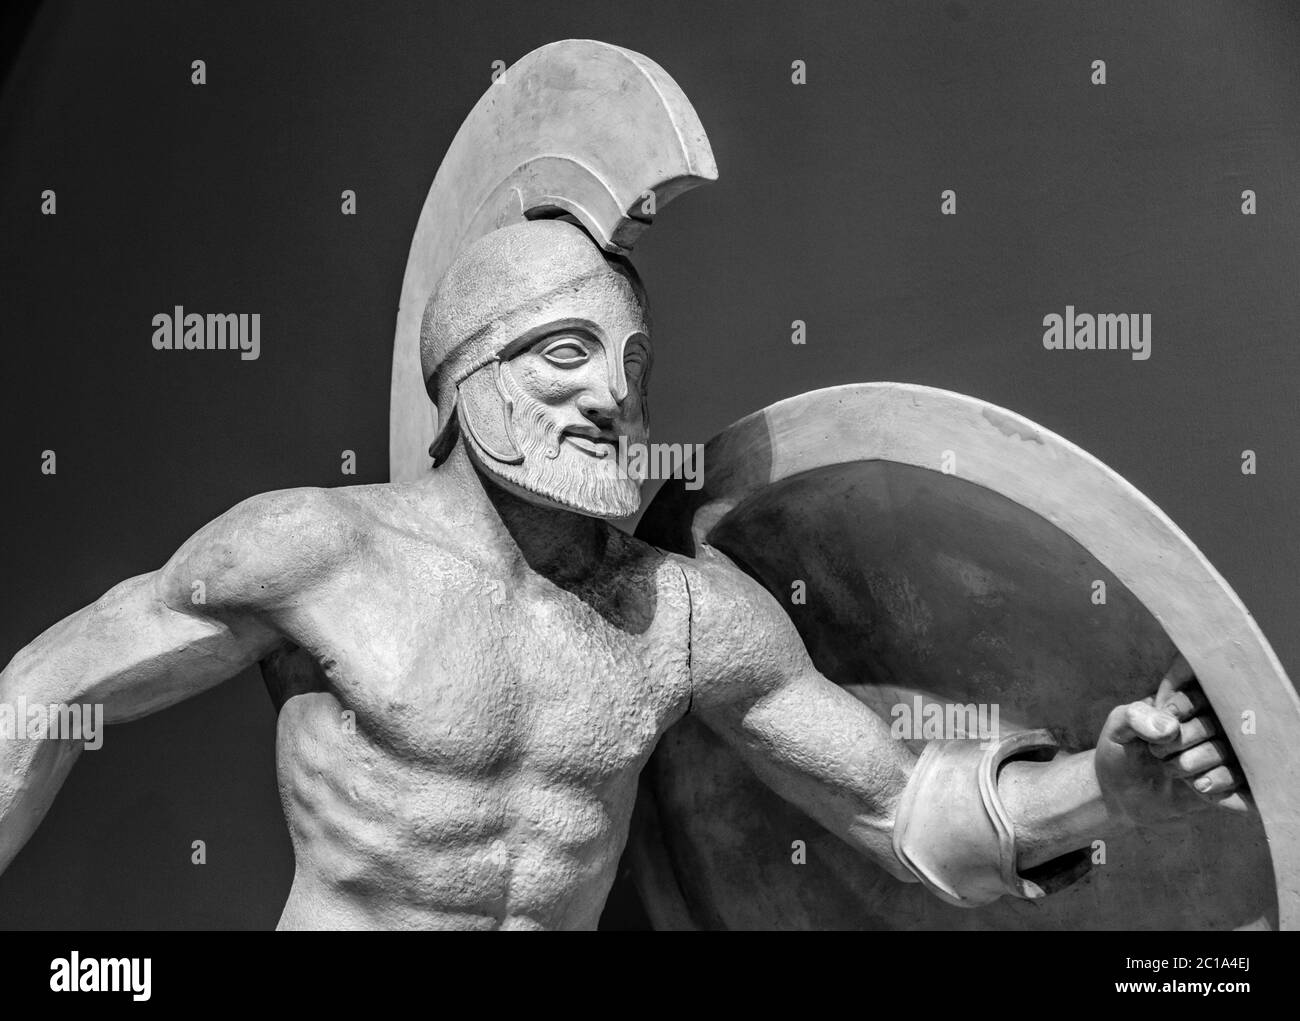 Roman statue of warrior in helmet Stock Photo